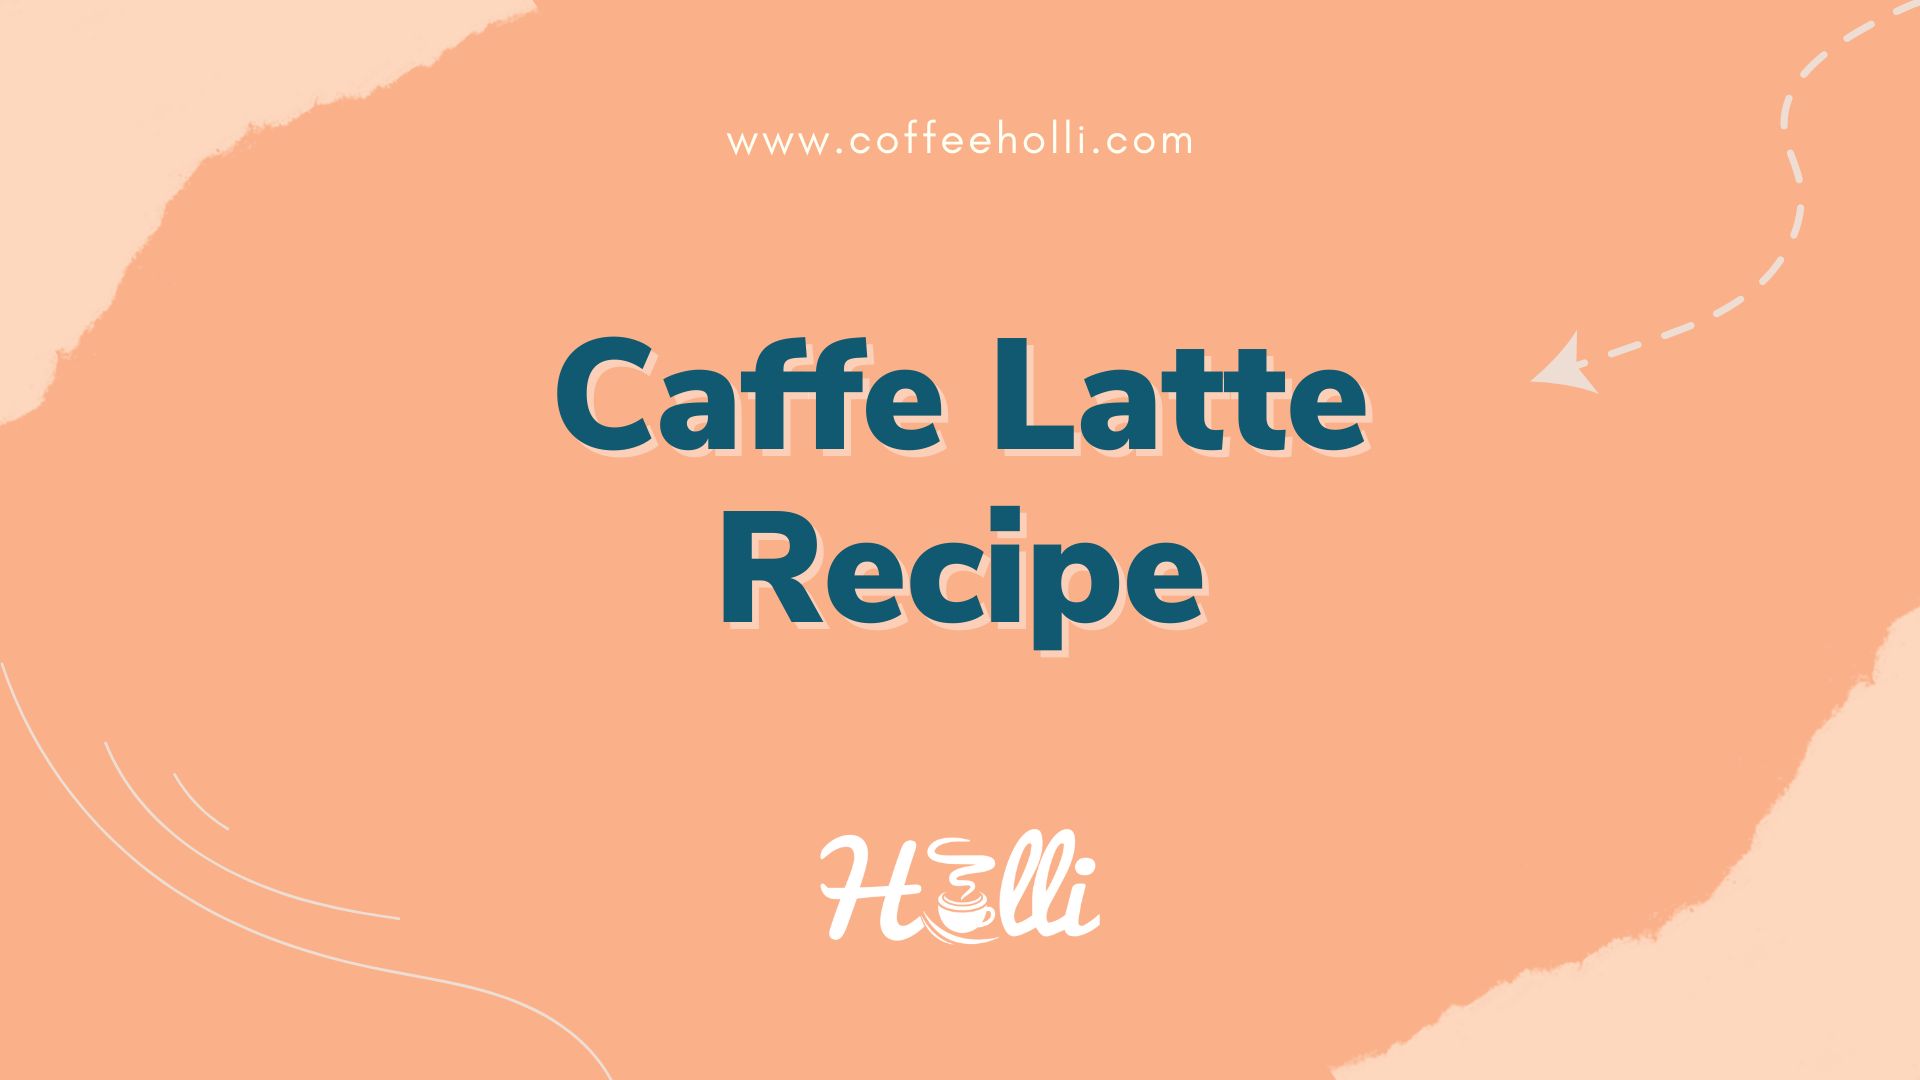 Caffe Latte Recipe